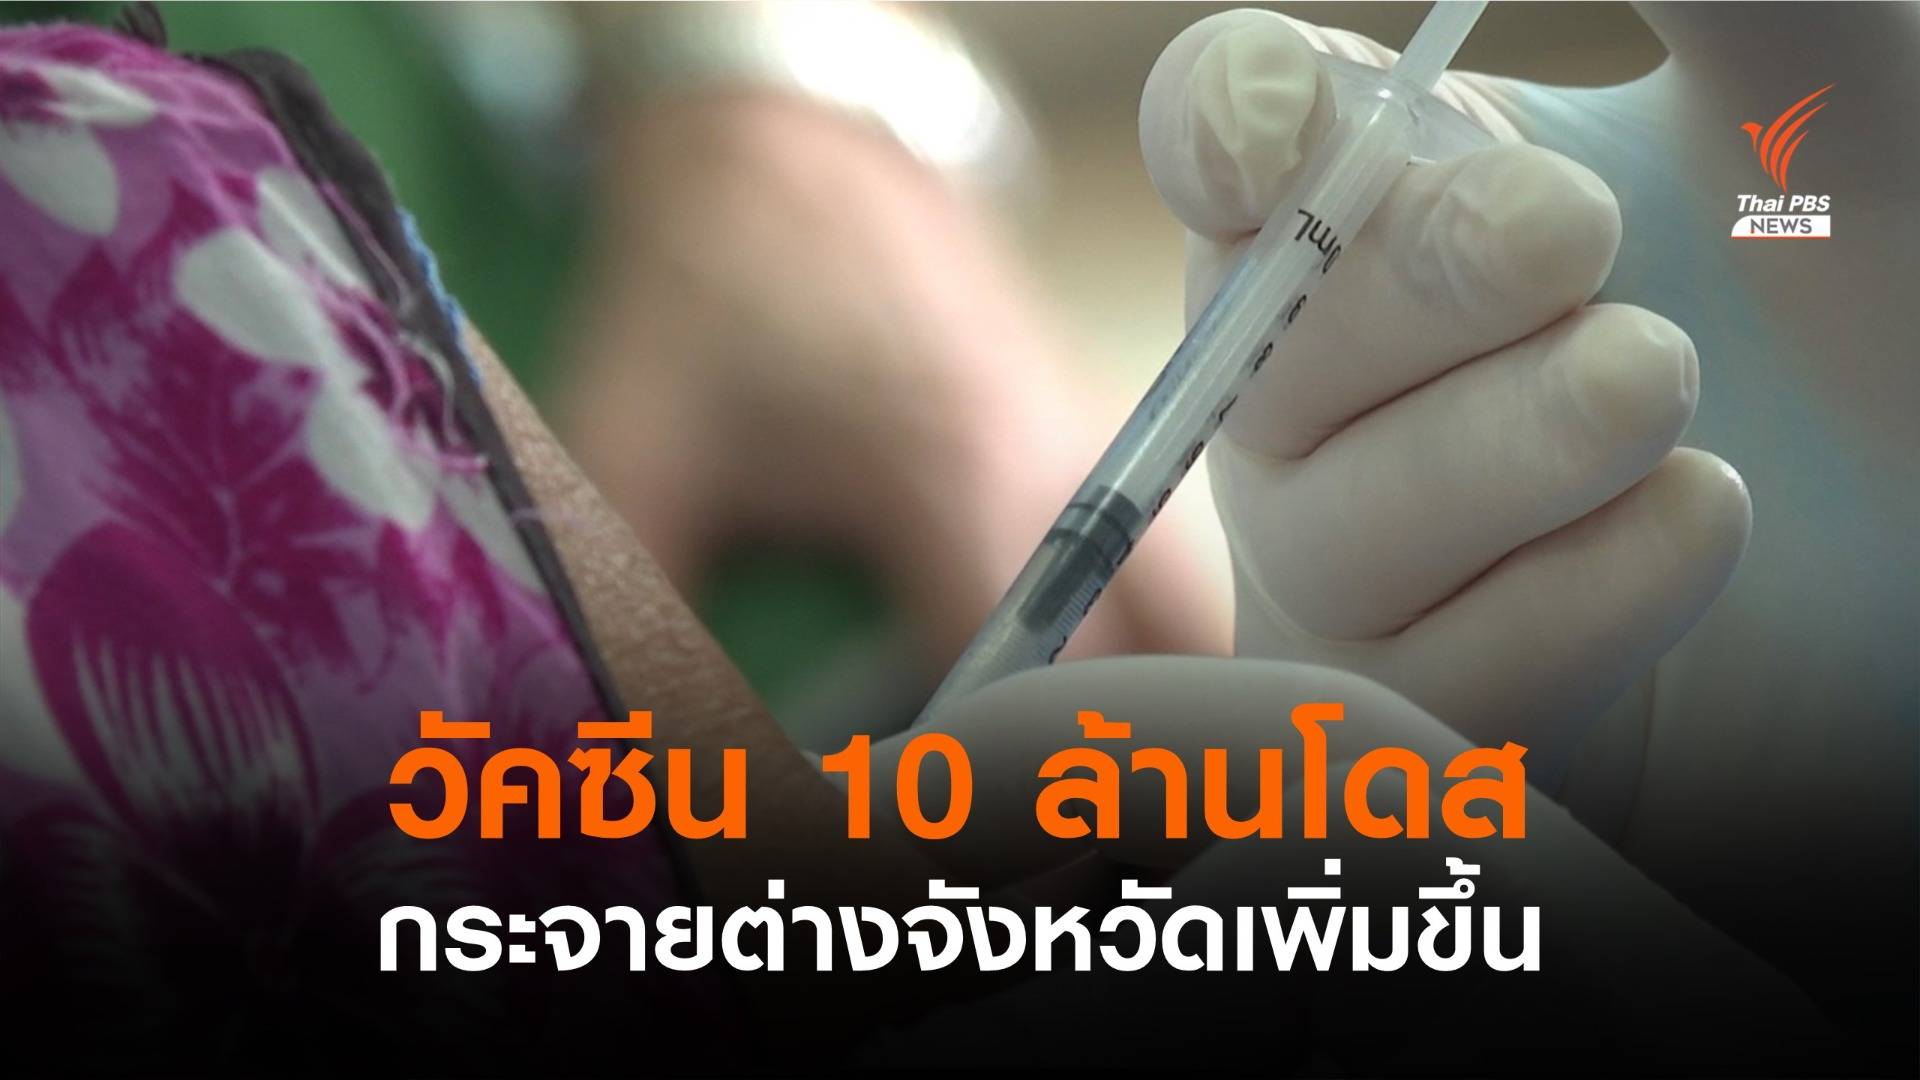 เปิดแผนกระจายวัคซีนเดือน ส.ค. 10 ล้านโดส